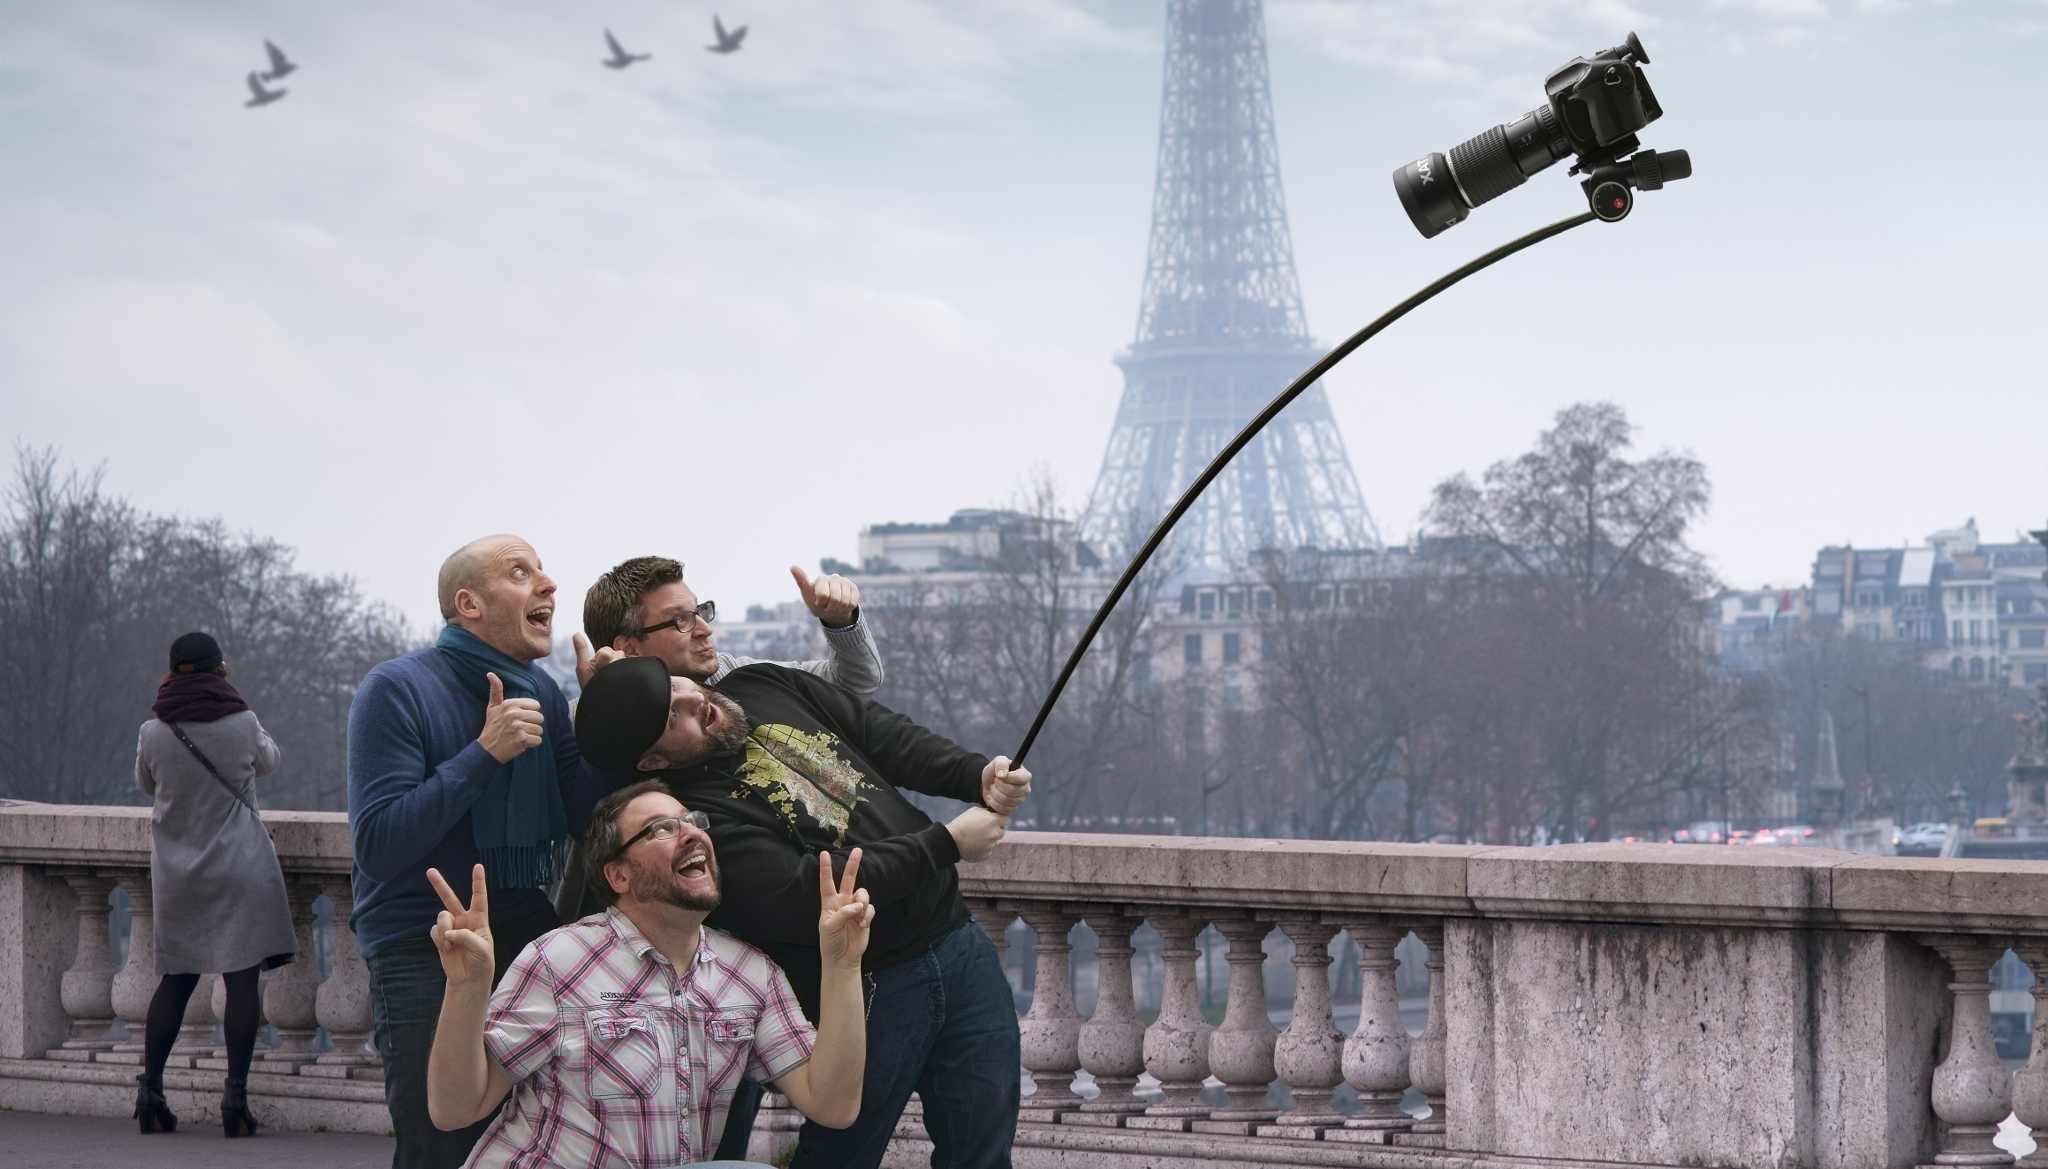 Humor: It's Not a Selfie Stick, It's a Monopod!!!